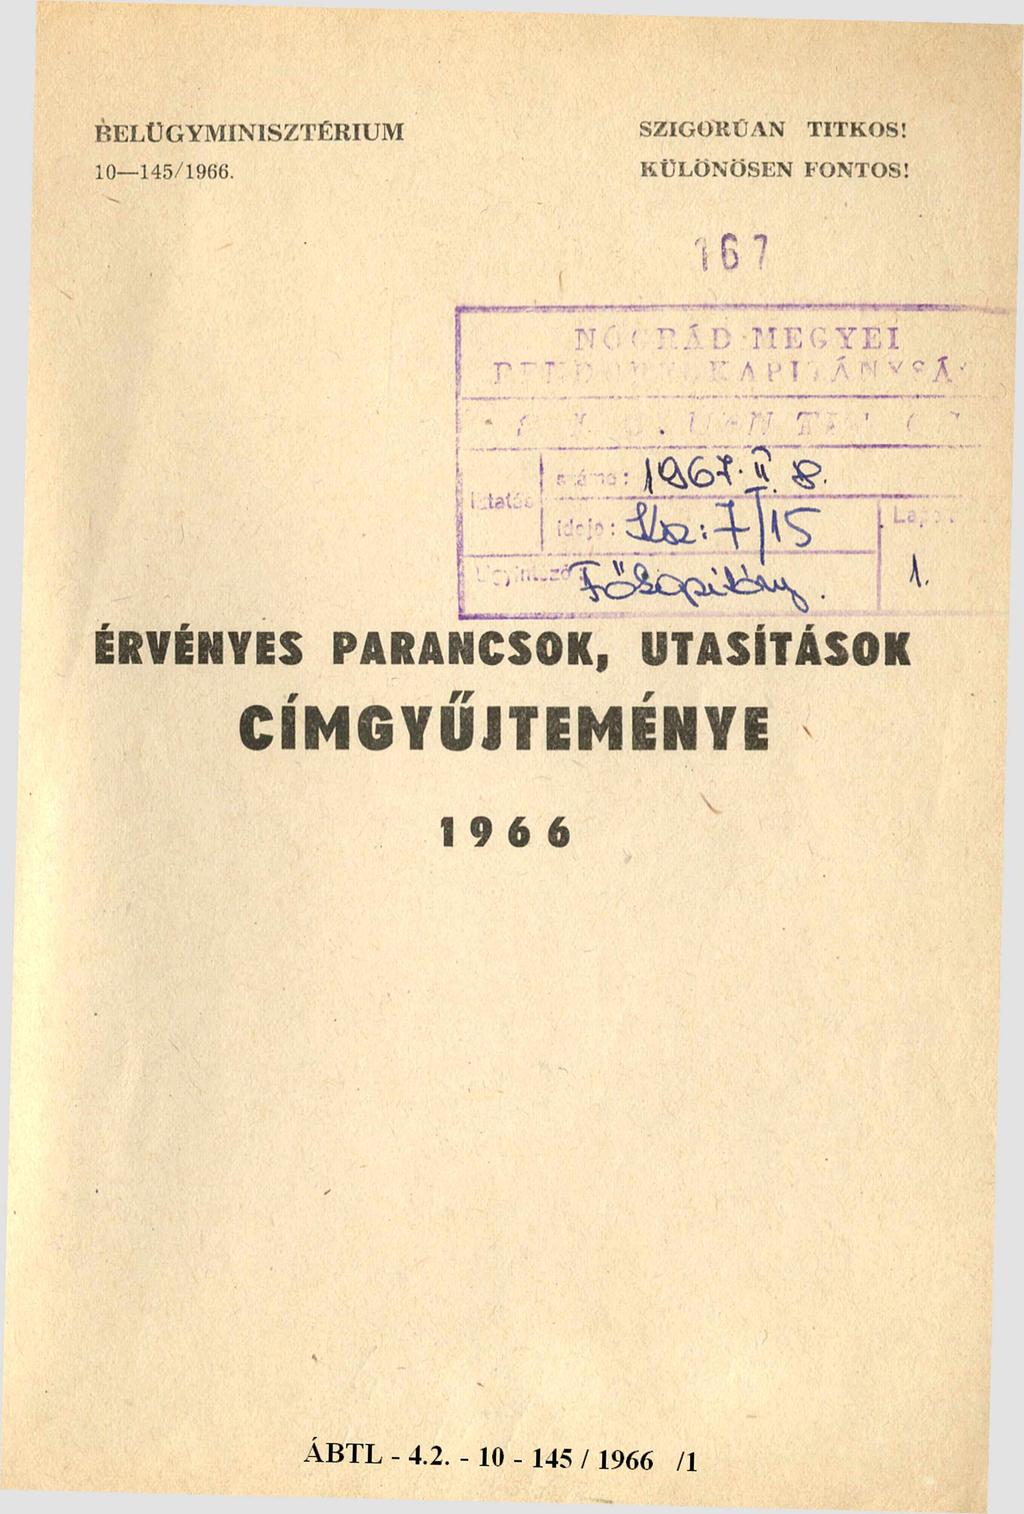 BELÜGYMINISZTÉRIUM 10-145/1966. SZIG O RÚAN TITK O S! KÜLÖN ÖSEN FONTOS!